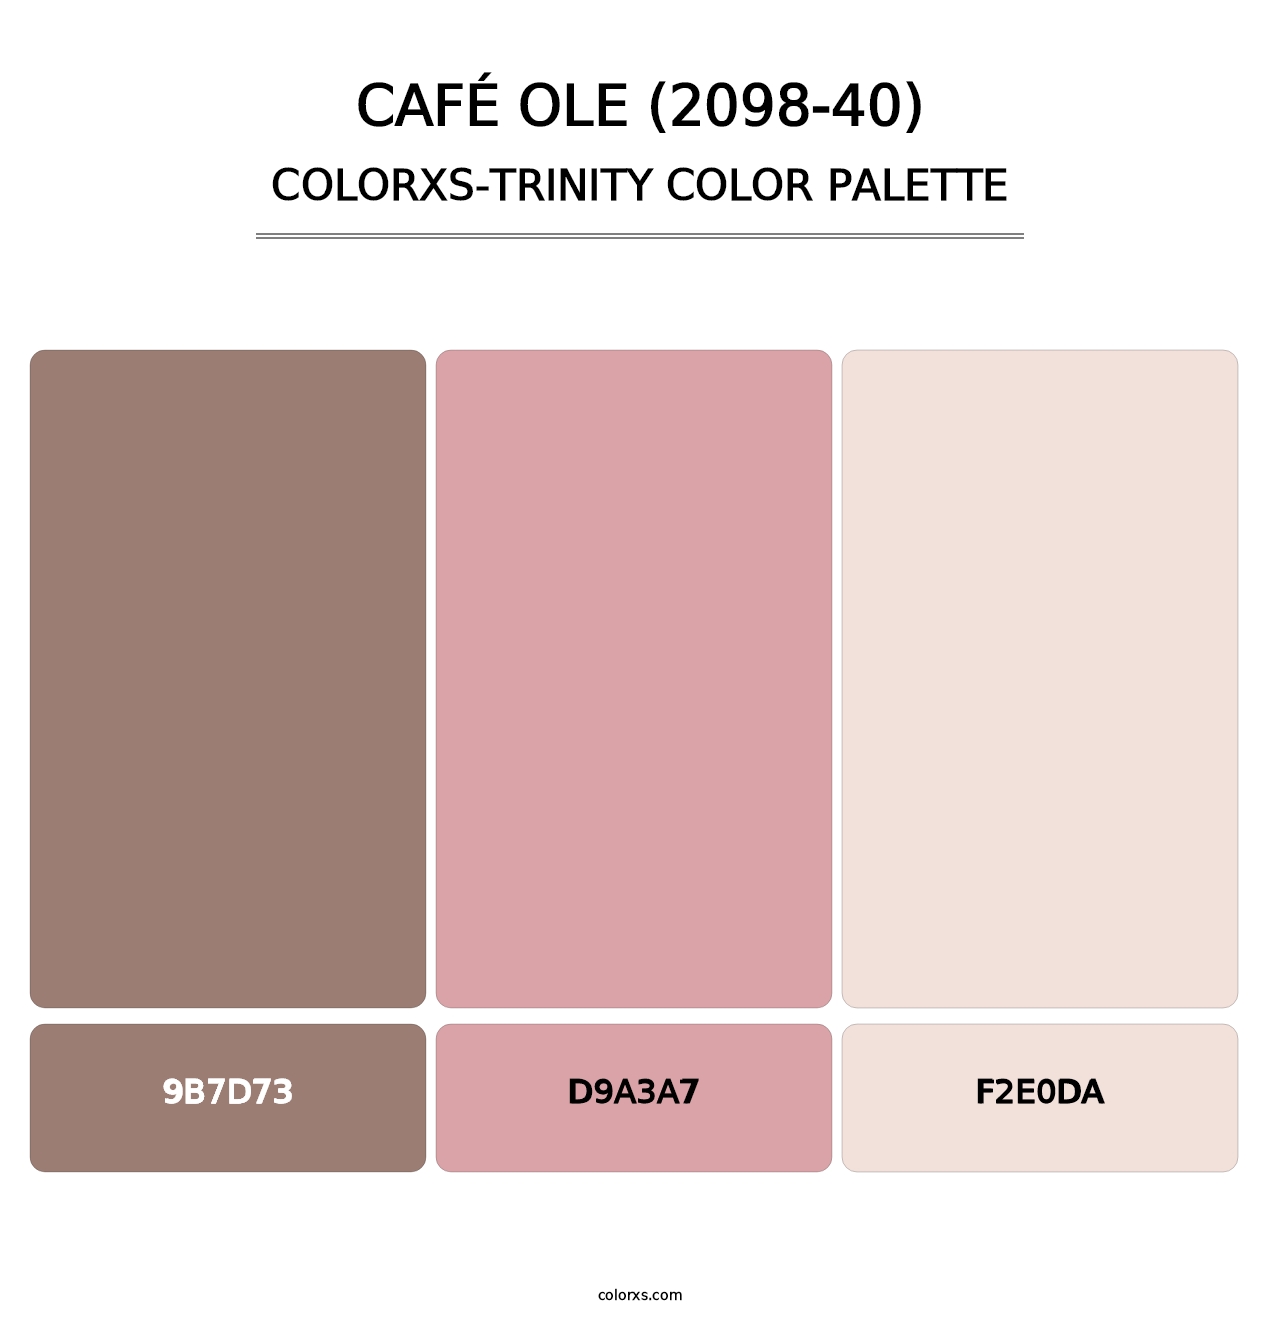 Café Ole (2098-40) - Colorxs Trinity Palette